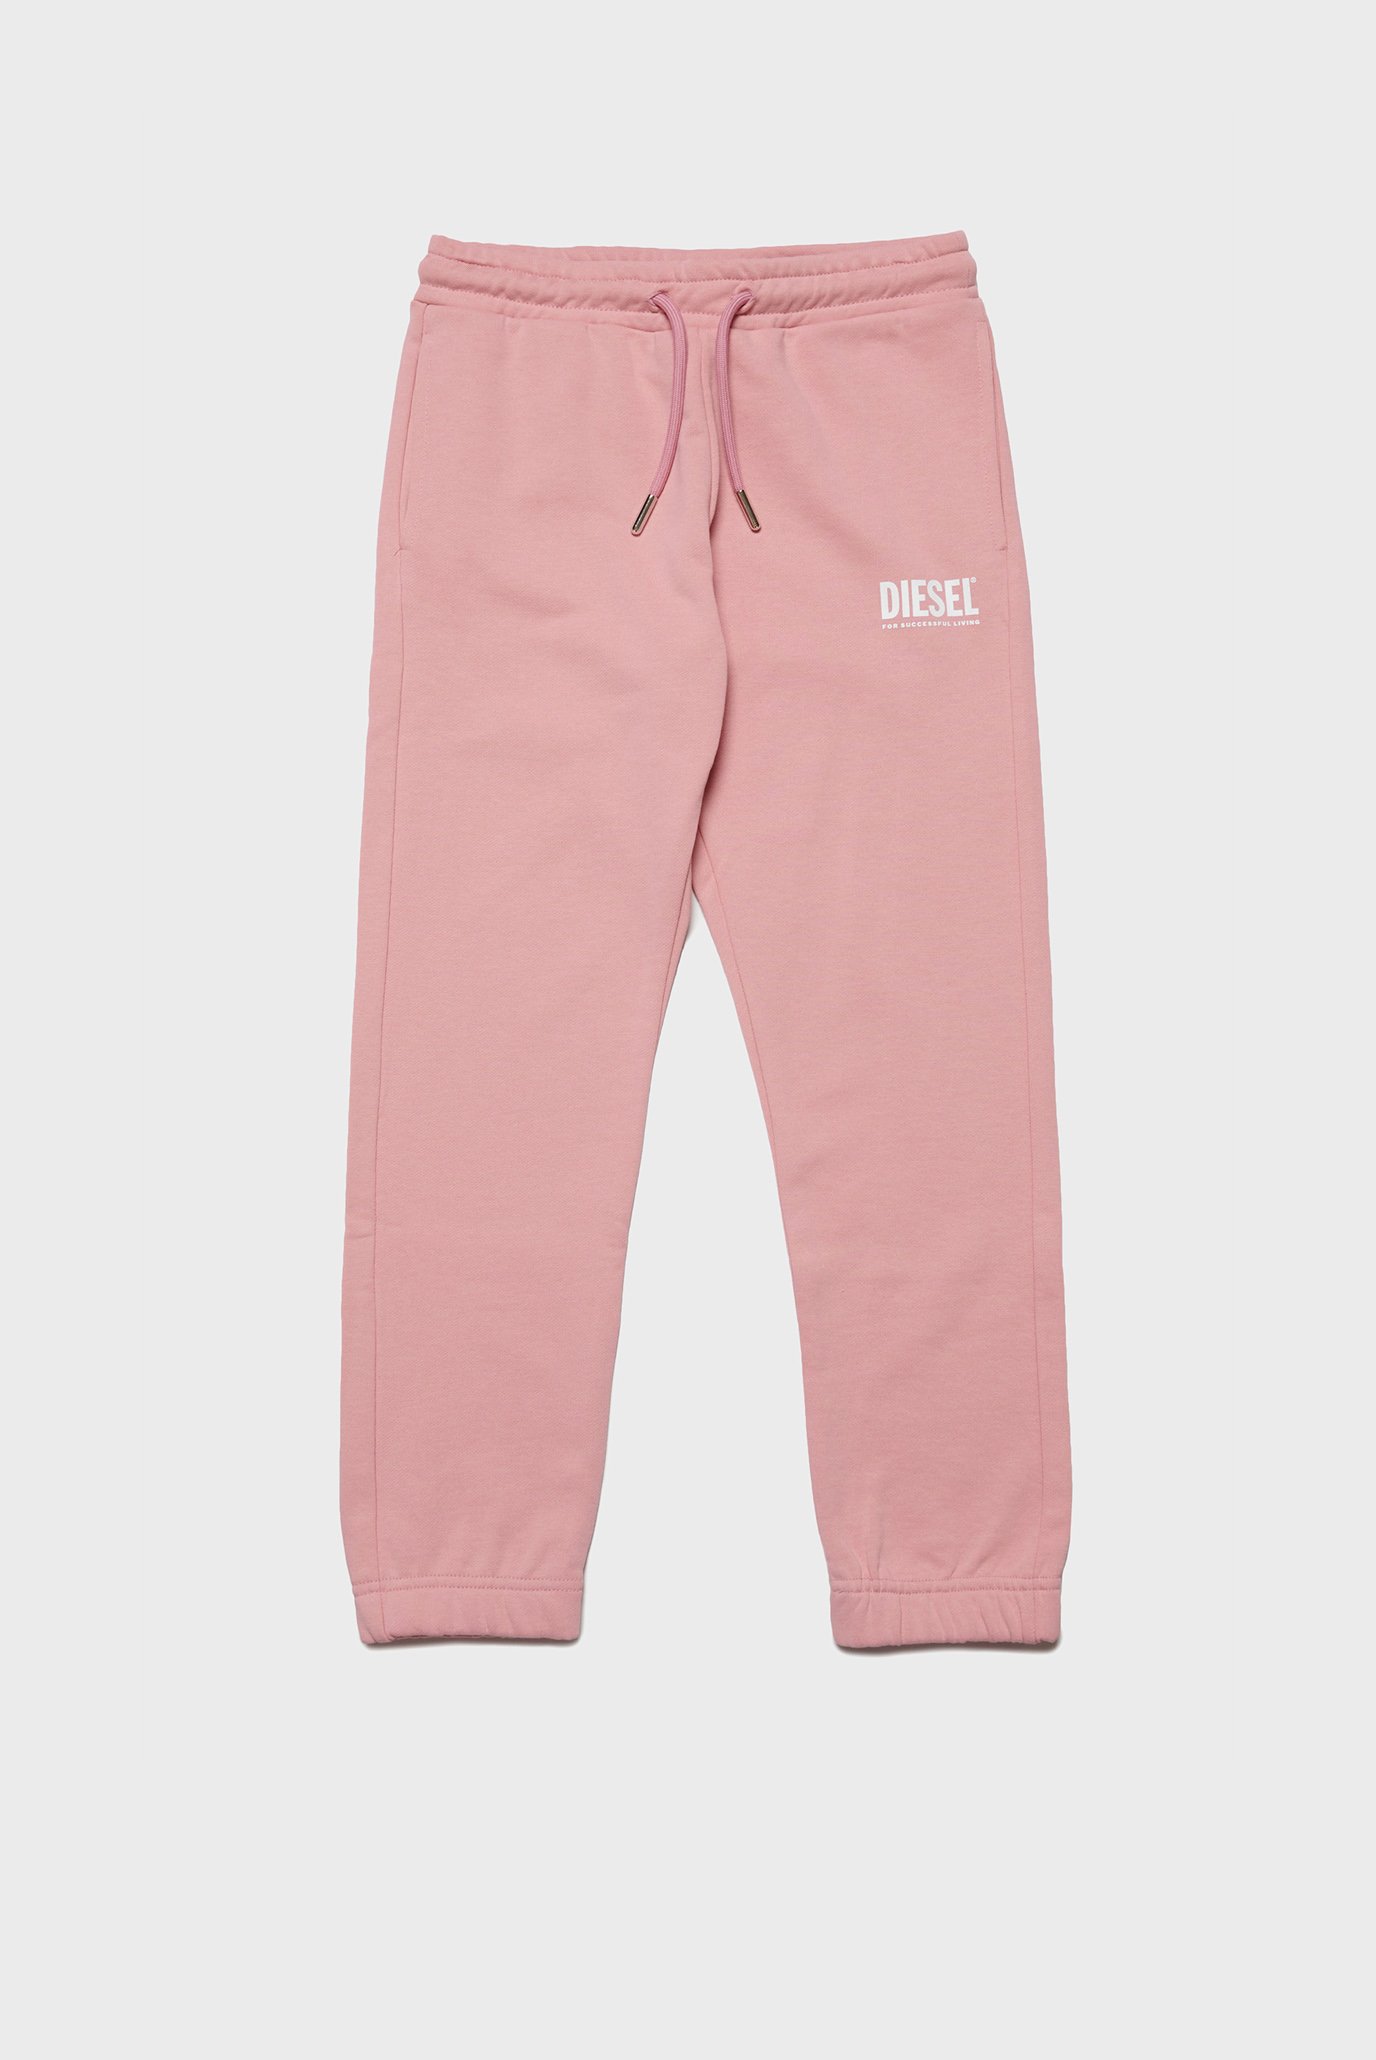 Детские розовые спортивные брюки LPENSIU DI PANTS 1